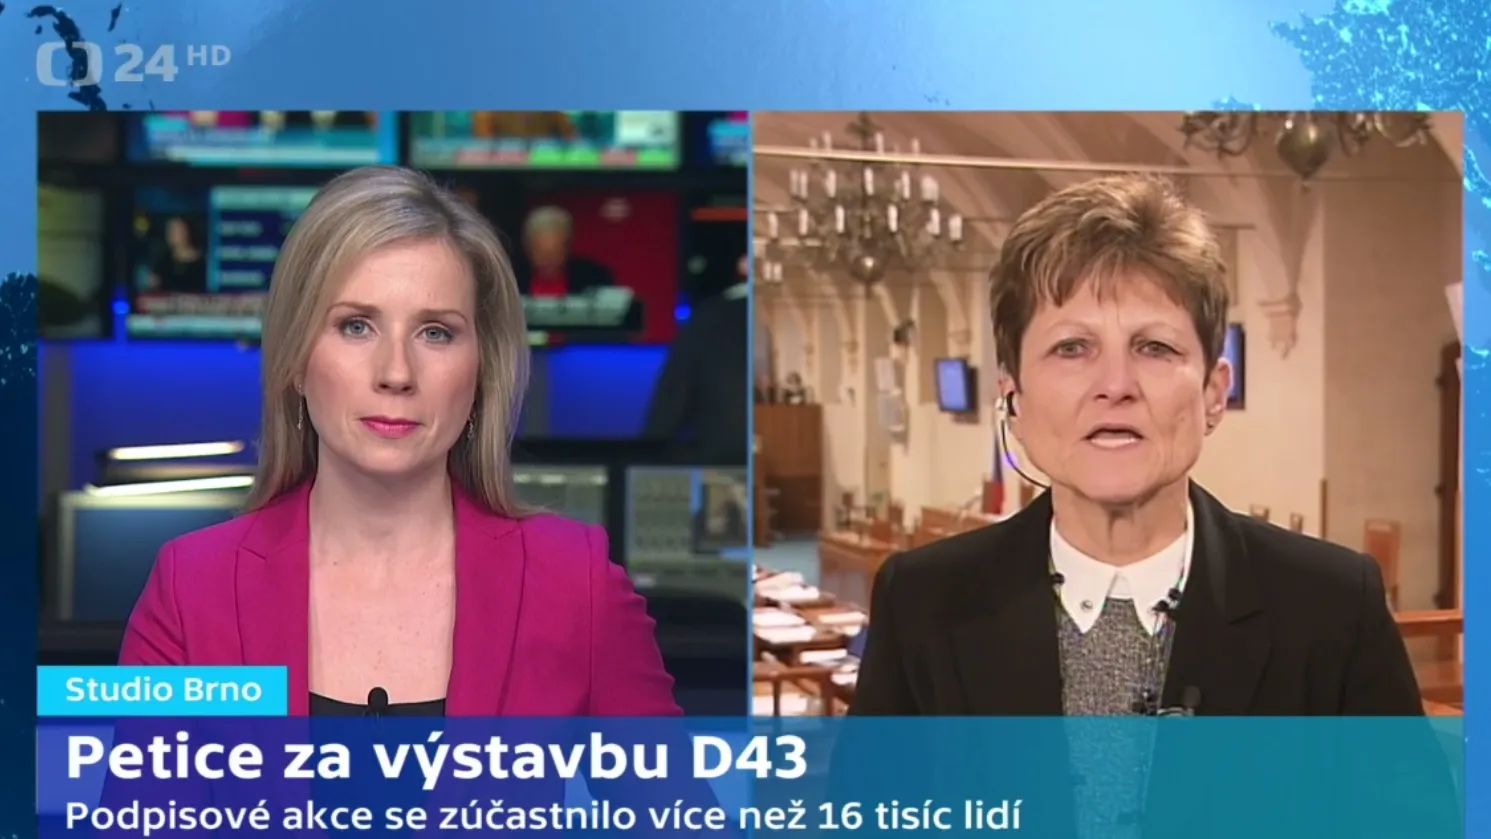 Senátorka Jaromíra Vítková (KDU-ČSL) vysvětluje význam petice